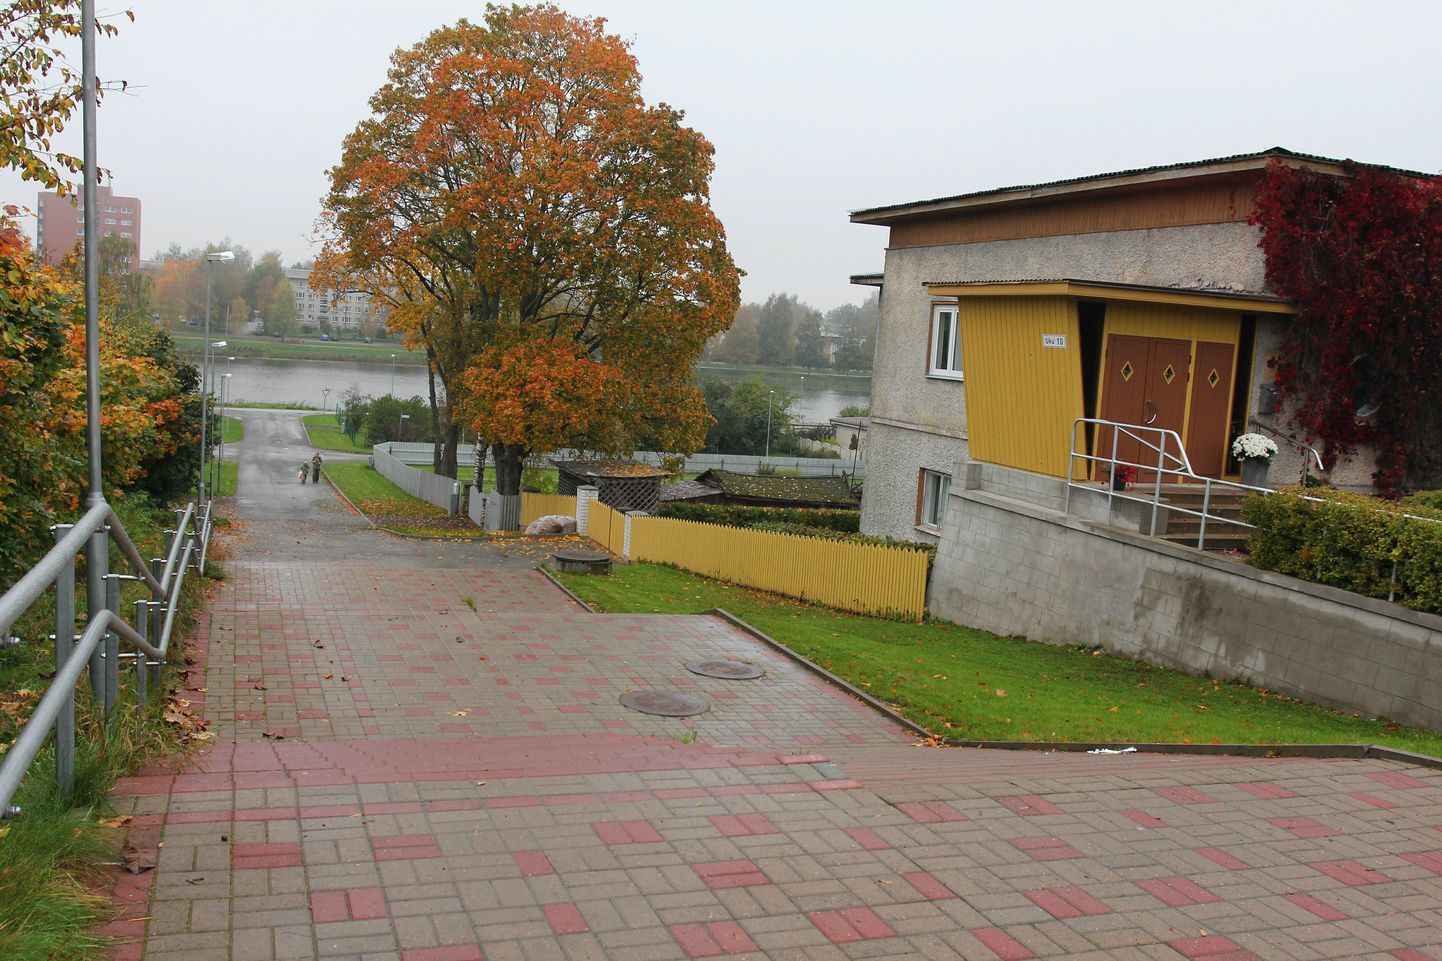 Viljandis Uku tänava trepi ümbruses on palju prahti ning ümbruskonnas pole ühtegi üldkasutatavat prügikasti.